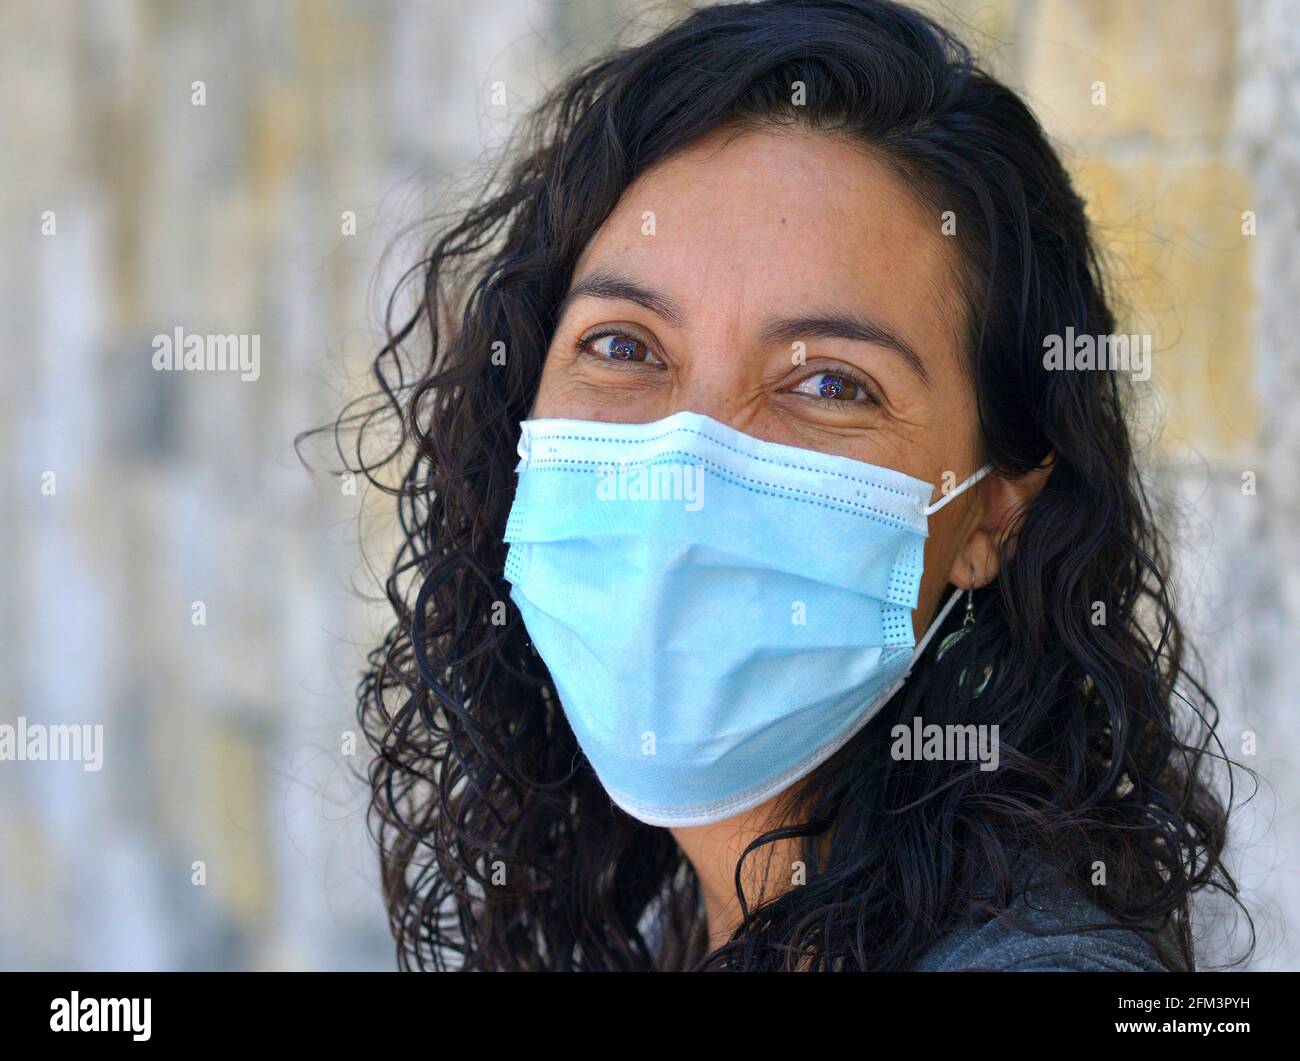 Positive optimiste Caucasienne femme avec de longues boucles noires mouillées et des yeux bruns souriants porte un masque chirurgical bleu clair pendant la pandémie de corona. Banque D'Images